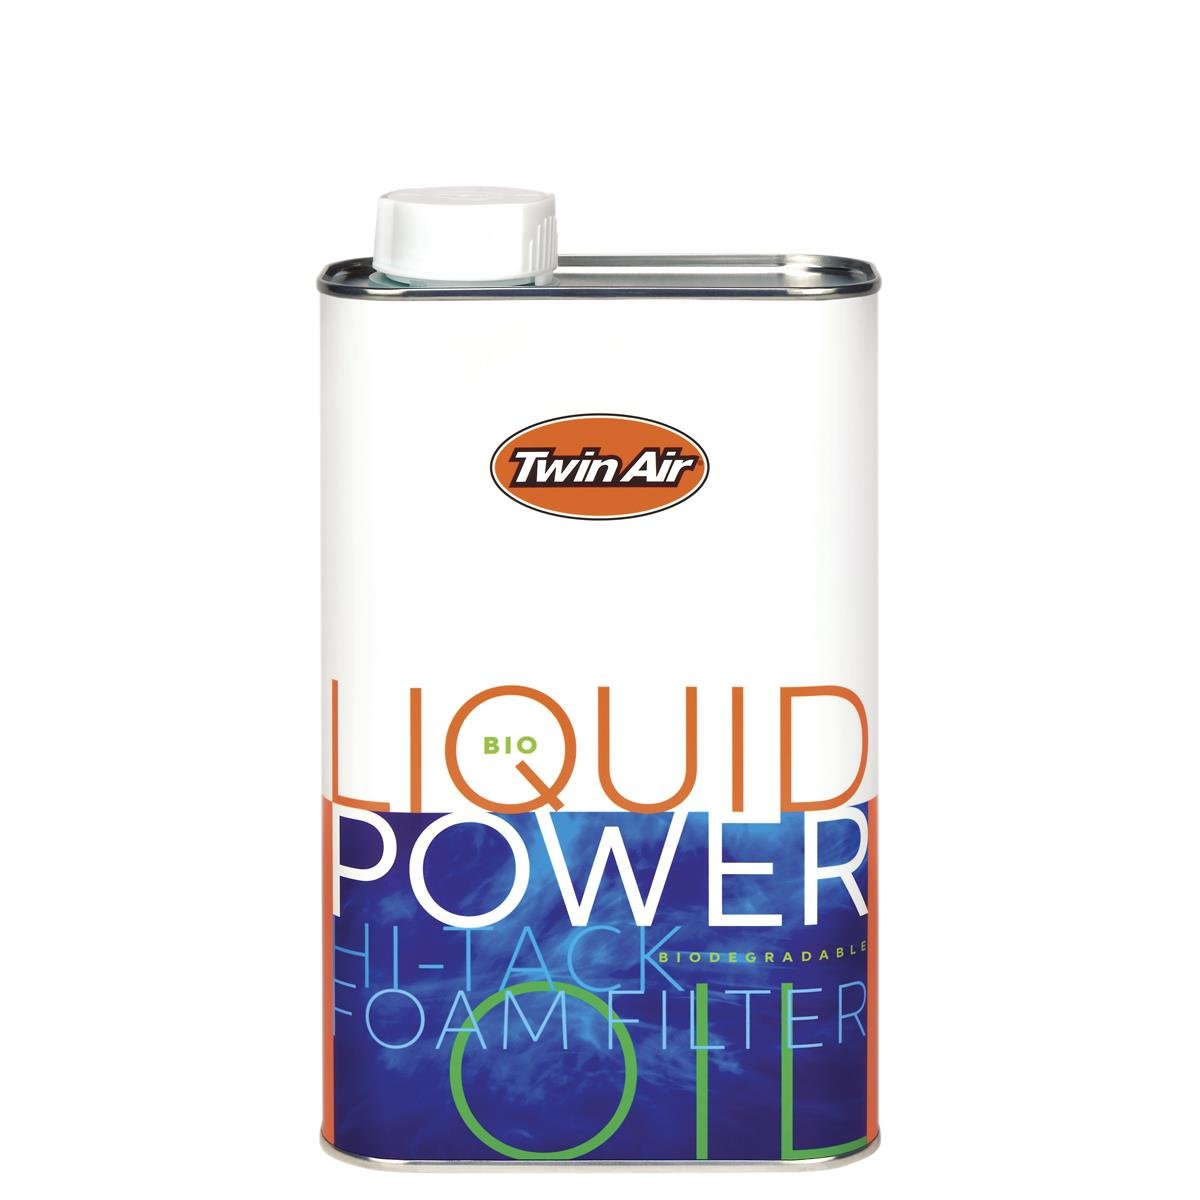 Twin Air Air Filter Oil Liquid Power Bio, 1 L